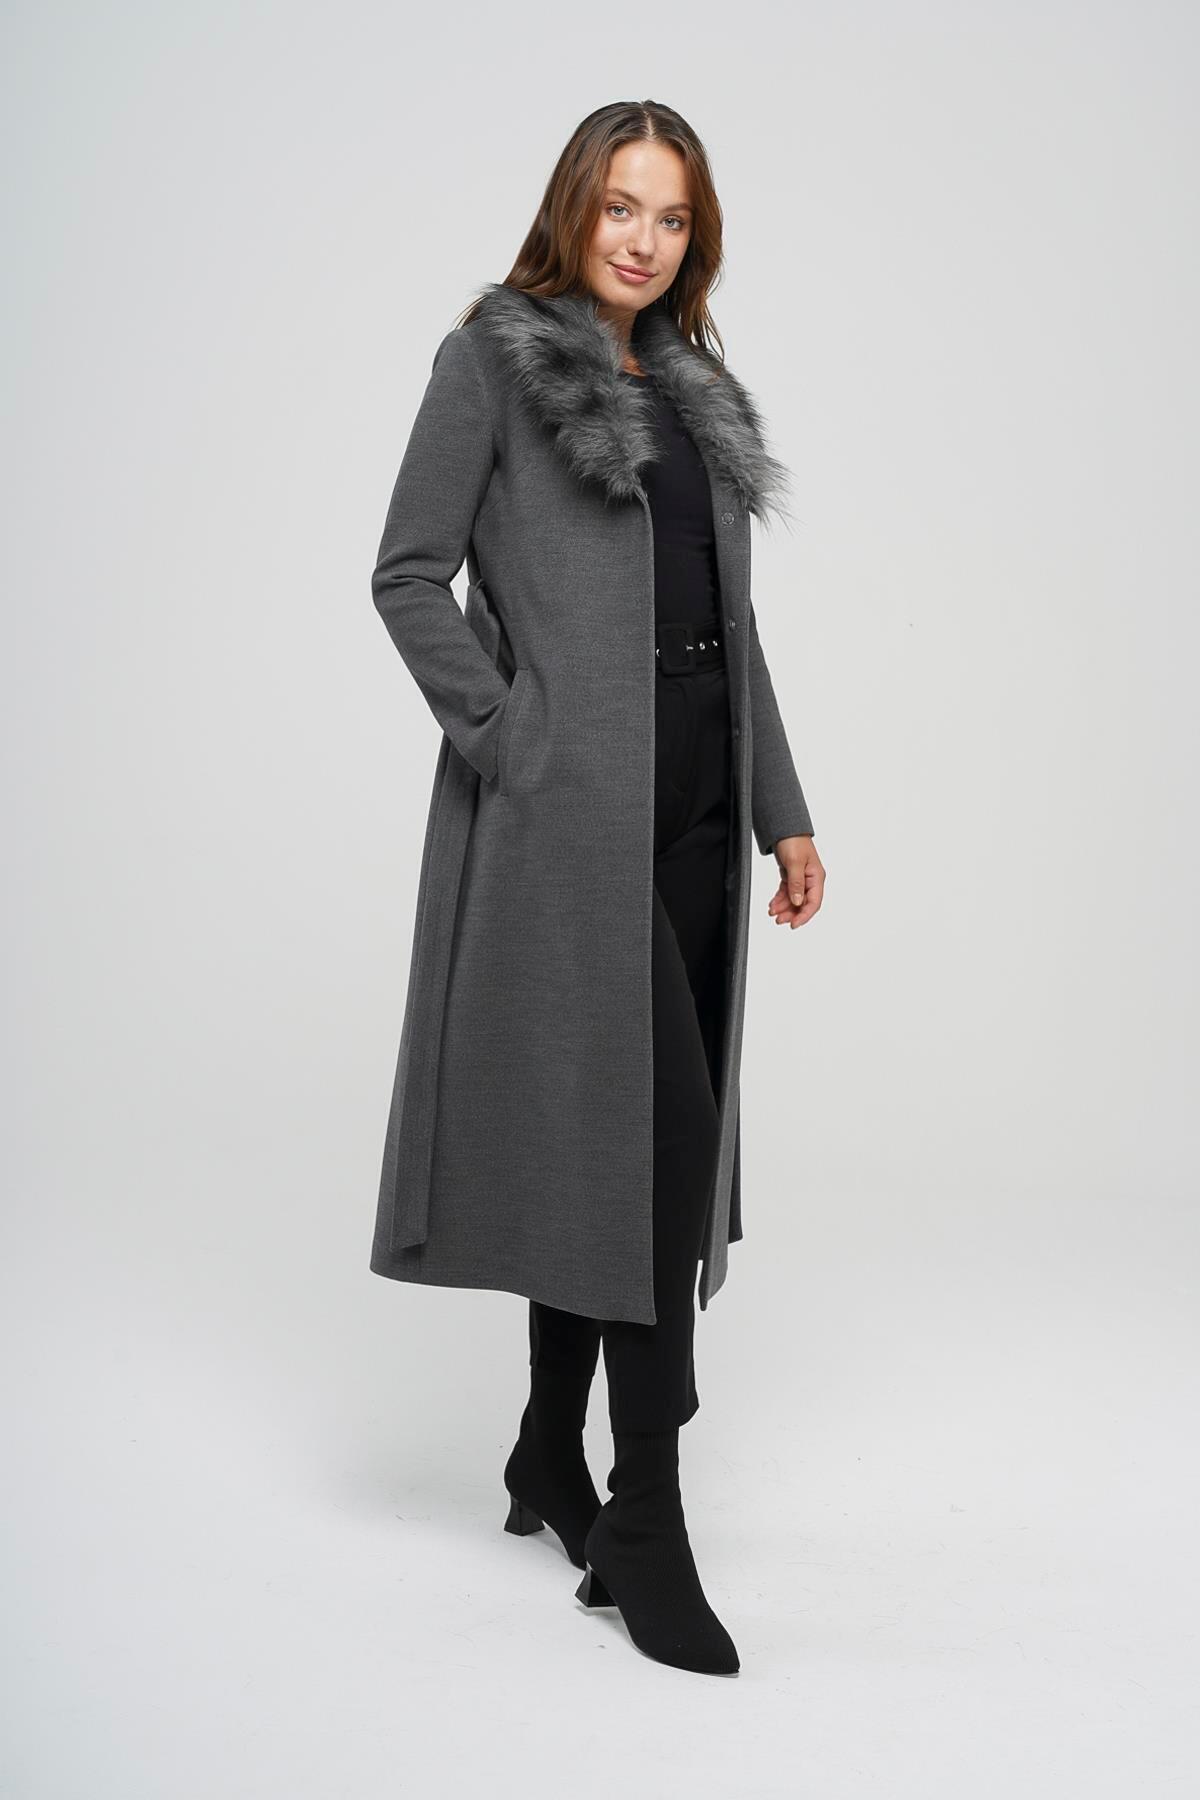 Пальто средней длины с меховым воротником на талии Темно-серый 3397 Concept. женская куртка средней длины с большим меховым воротником однотонная из xl 7xl хлопка легкое пальто